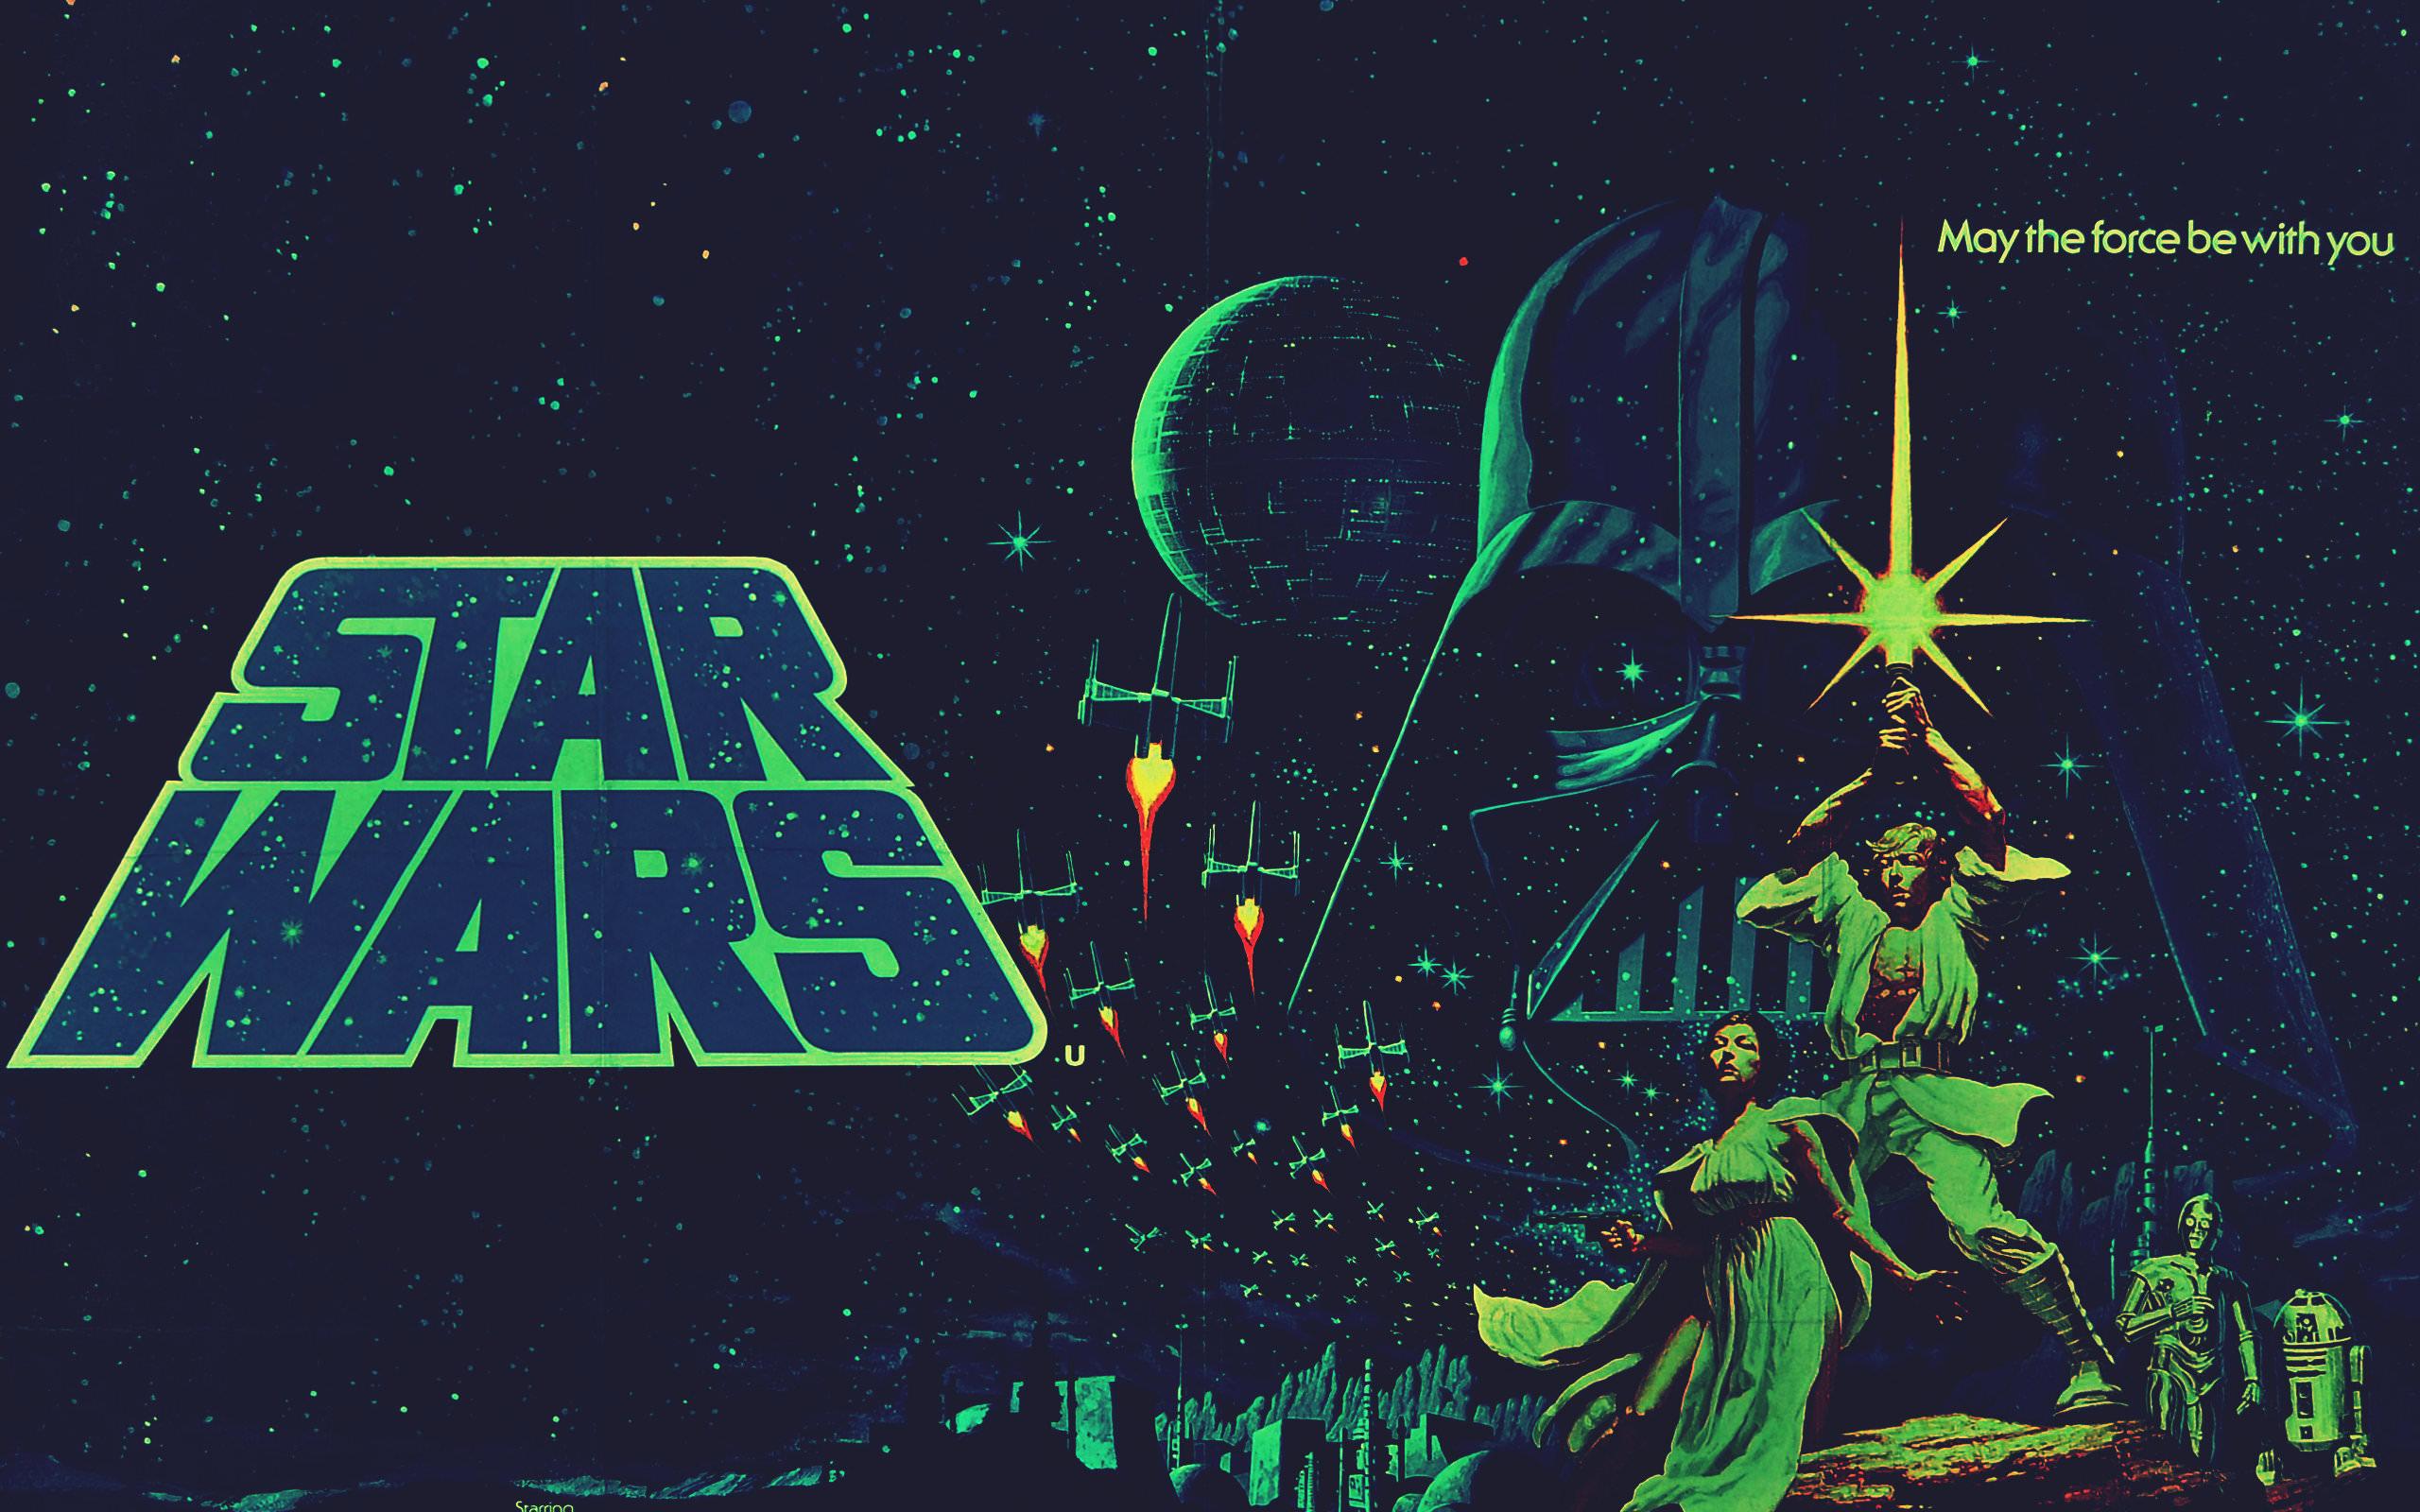 Star Wars Episode 4 (IV): A New Hope wallpaper HD for desktop